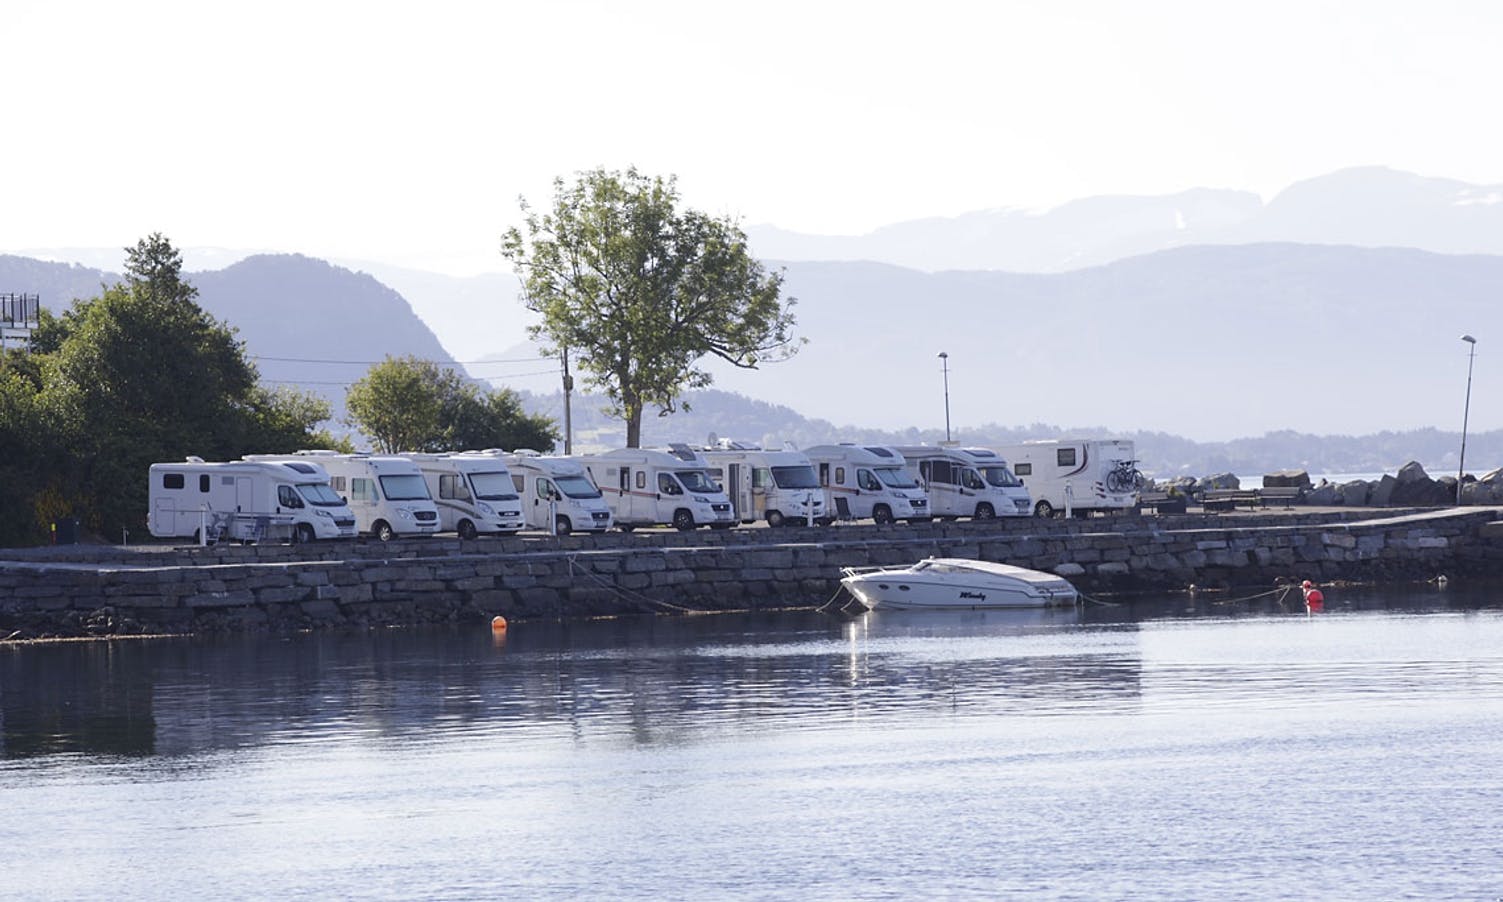 Dei populære bubilplassane kan no få selskap av 20 båtar. (Foto: KVB)